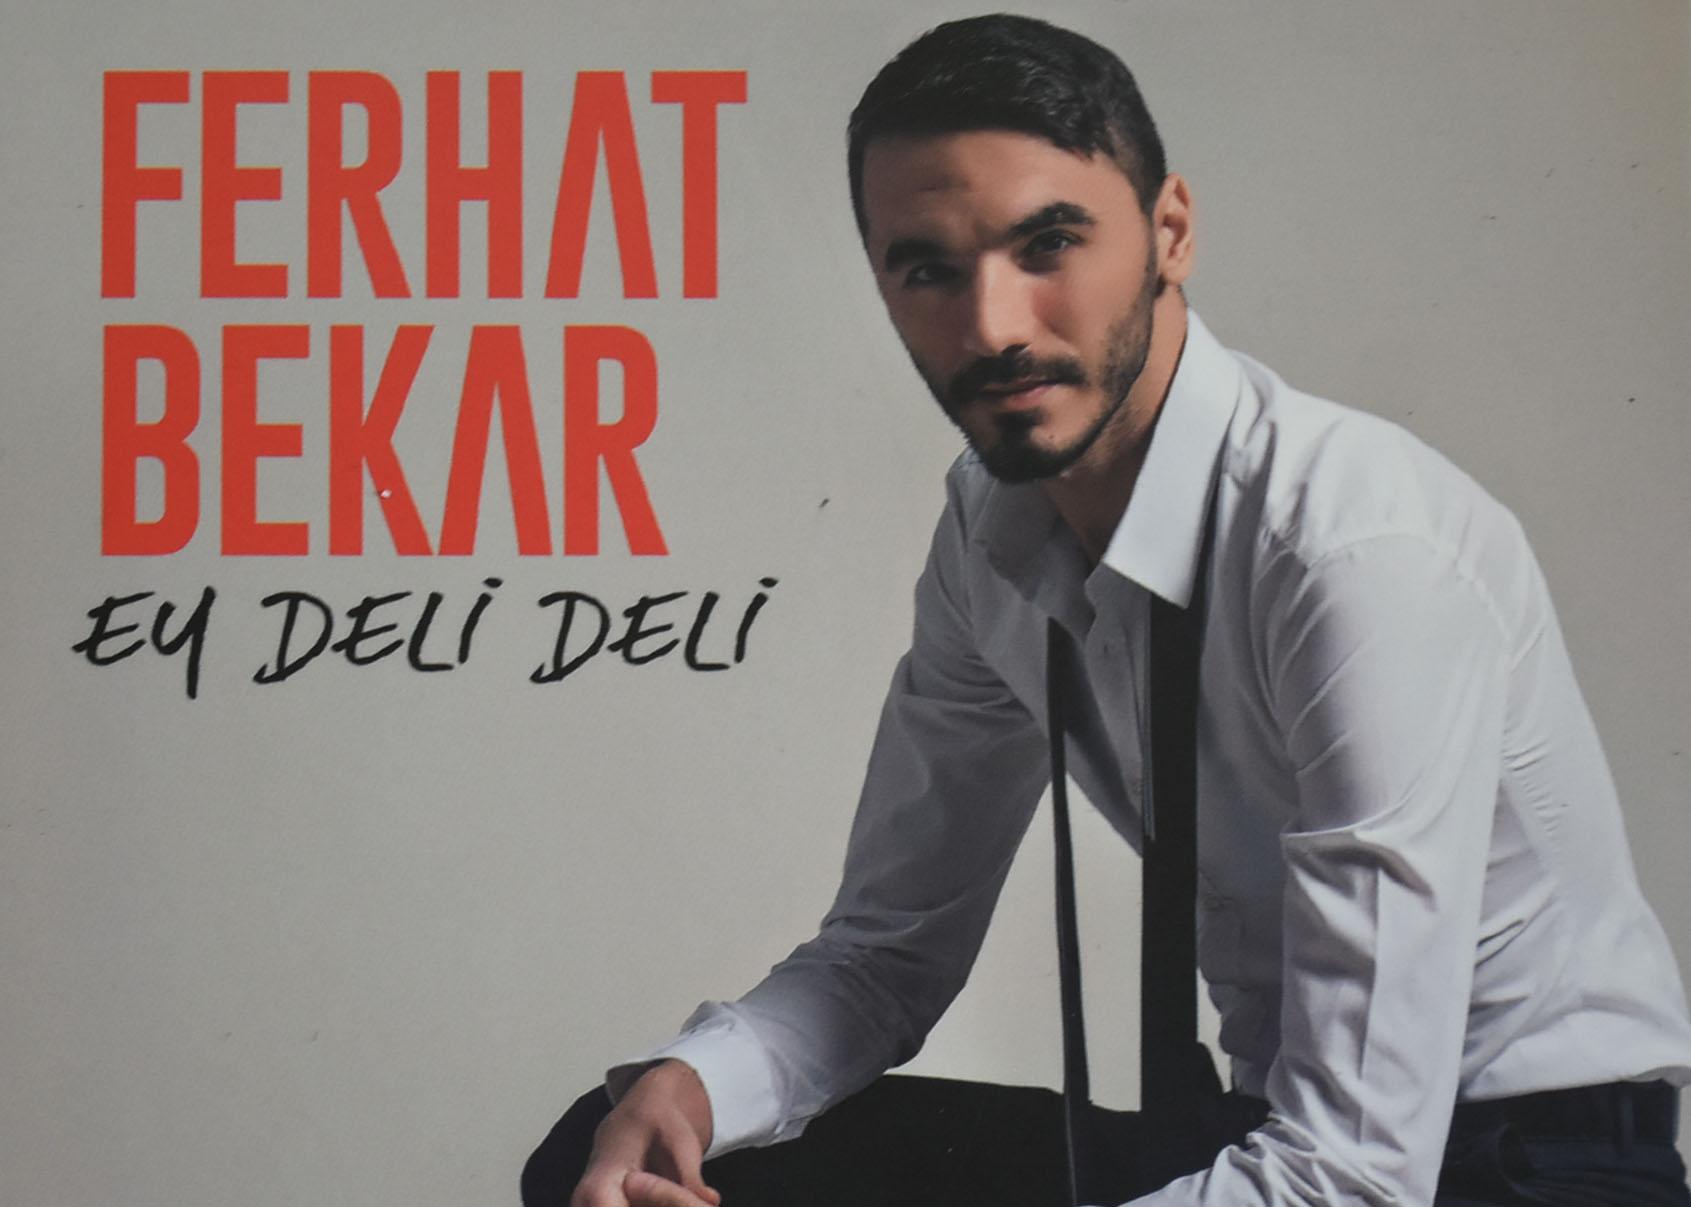 Ferhat Bekar’ın albümü müzik marketlerde - Kırıkkale Haber, Son Dakika Kırıkkale Haberleri